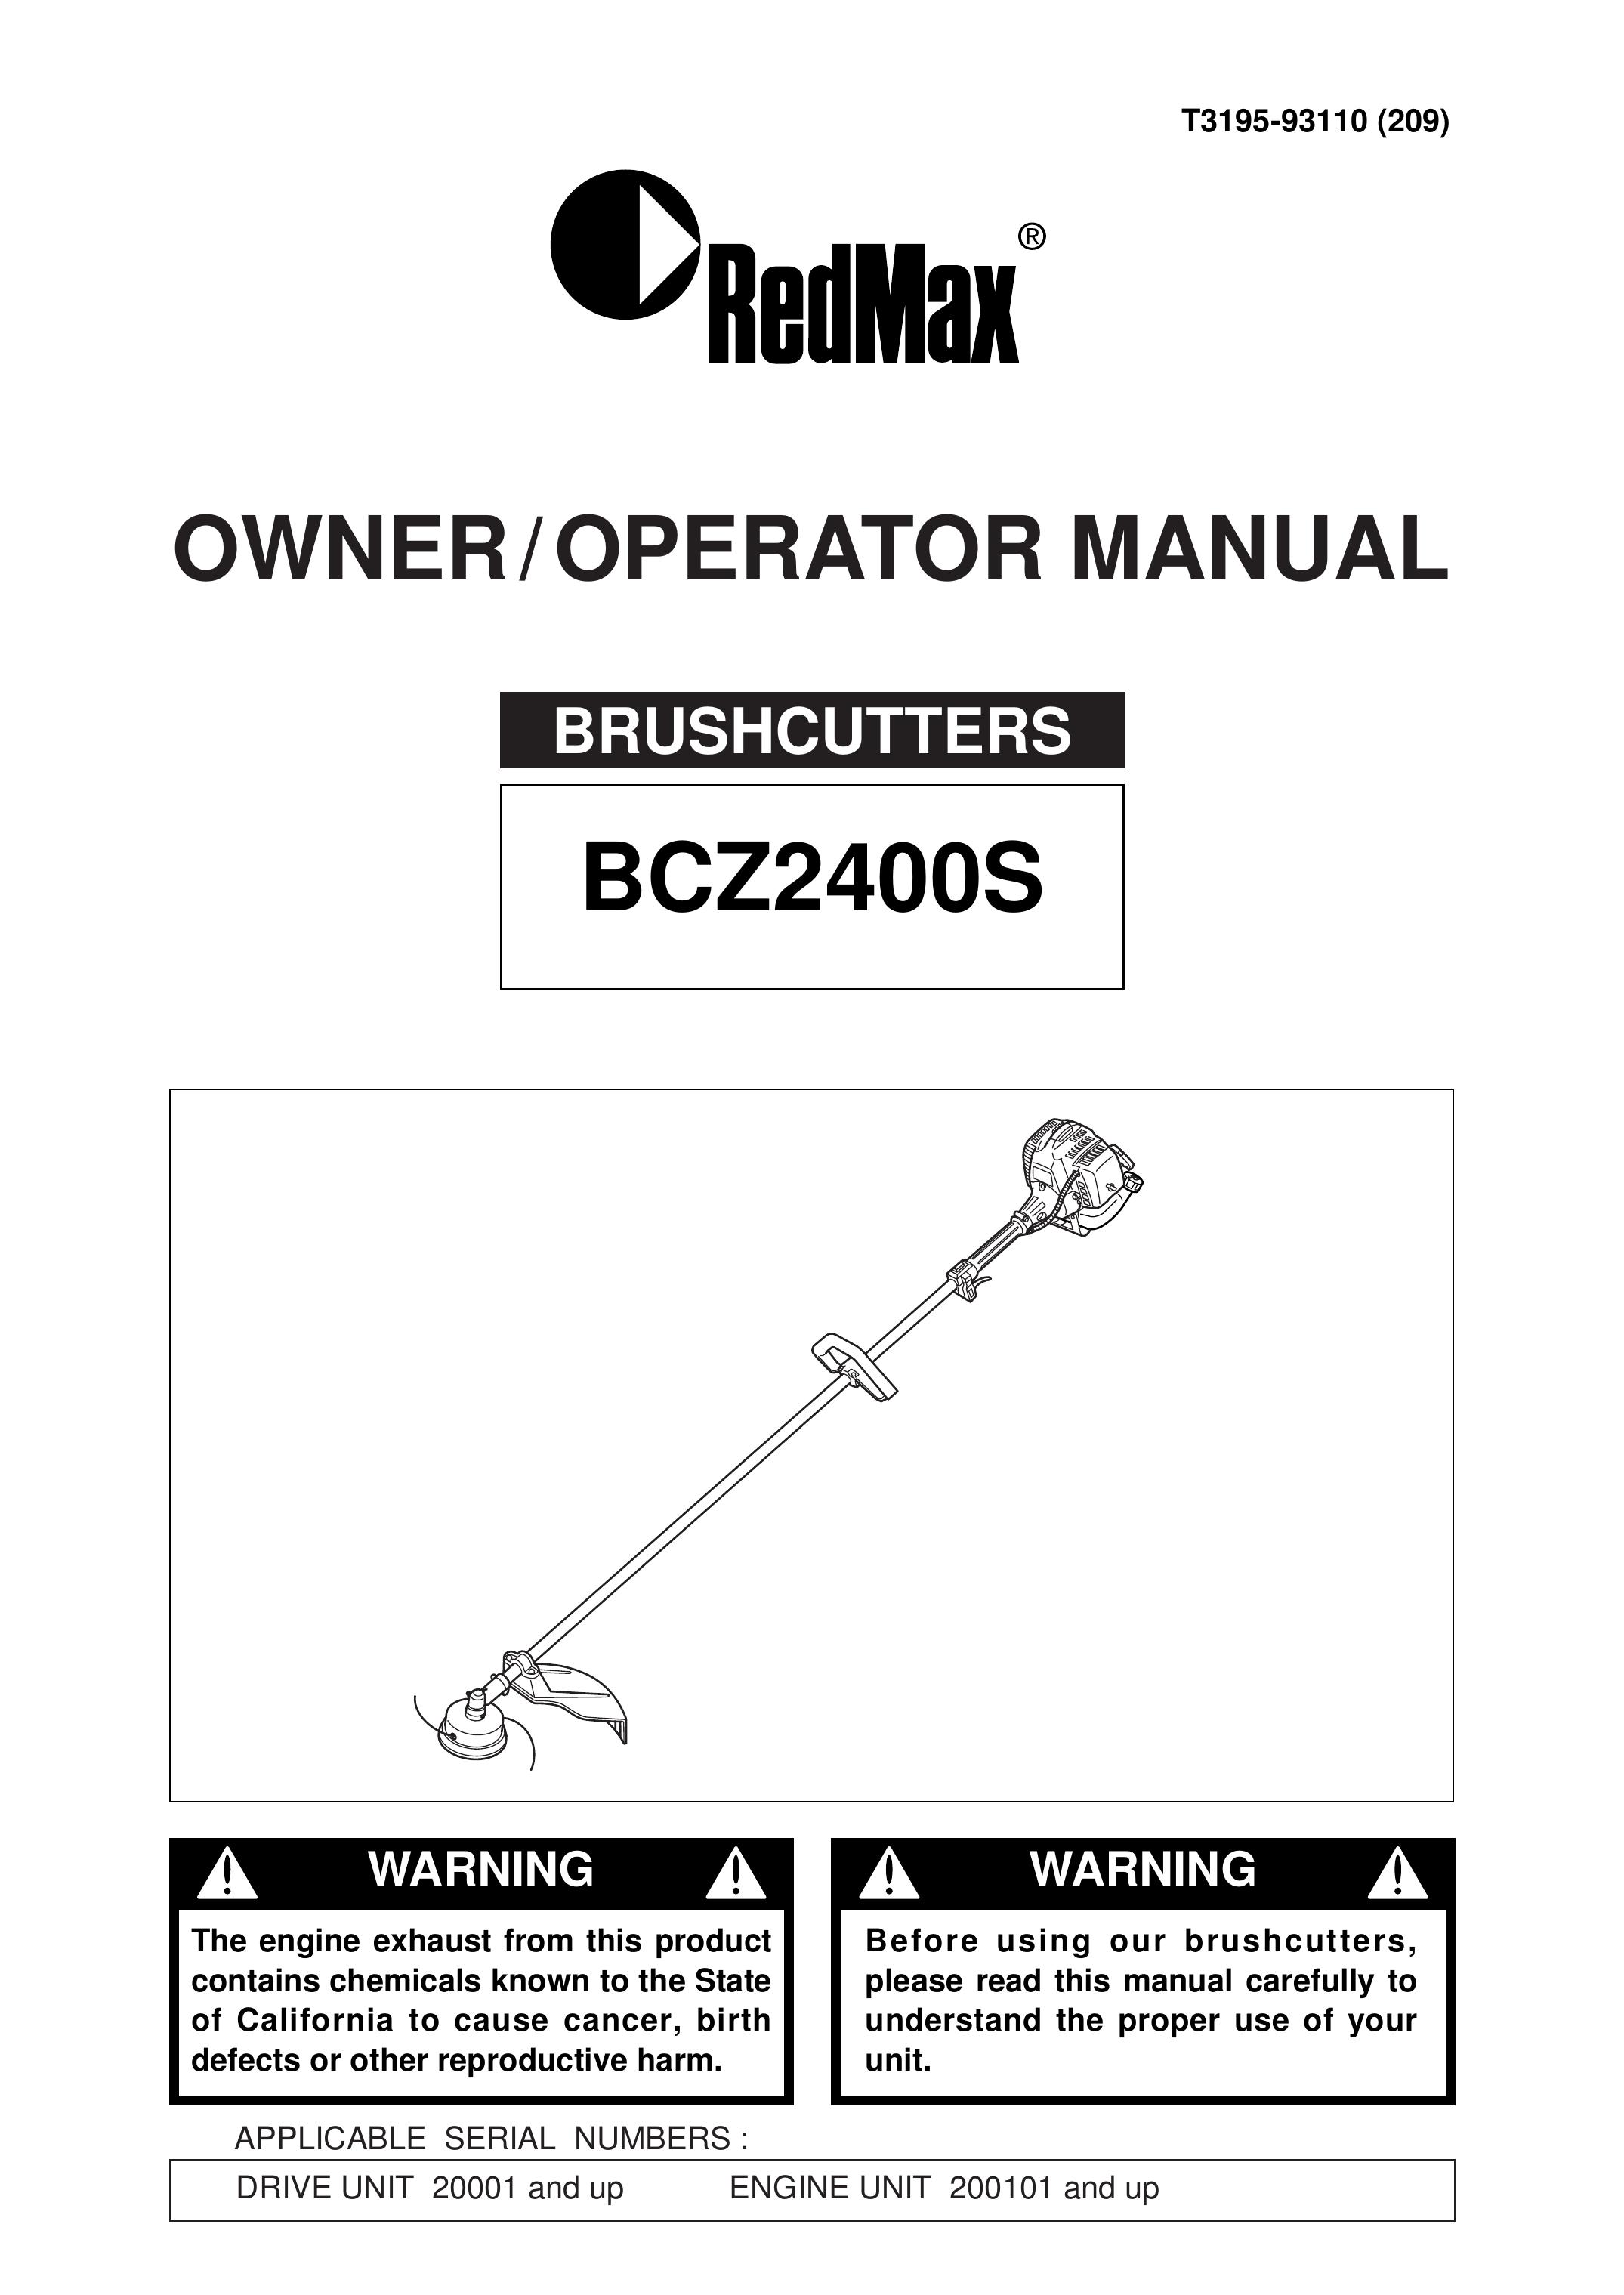 RedMax BCZ2400S Brush Cutter User Manual